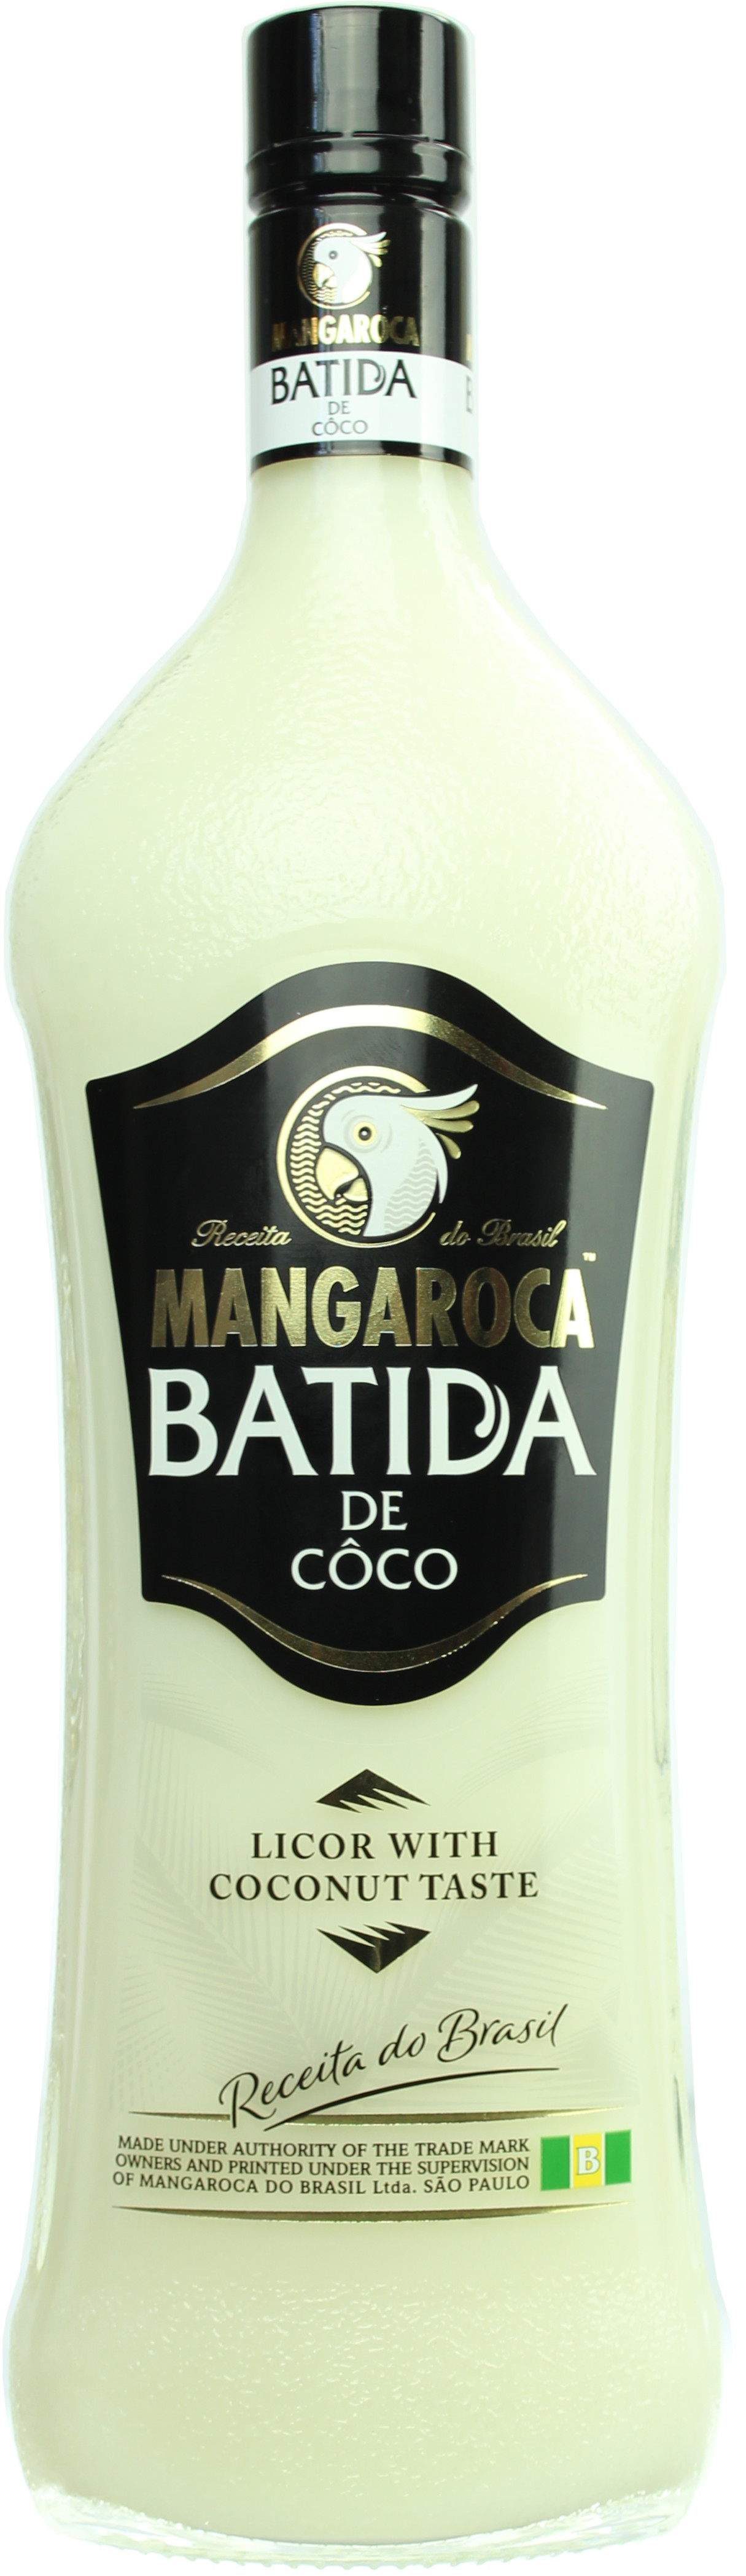 Batida de Coco Mangaroca 16.0% 0,7l